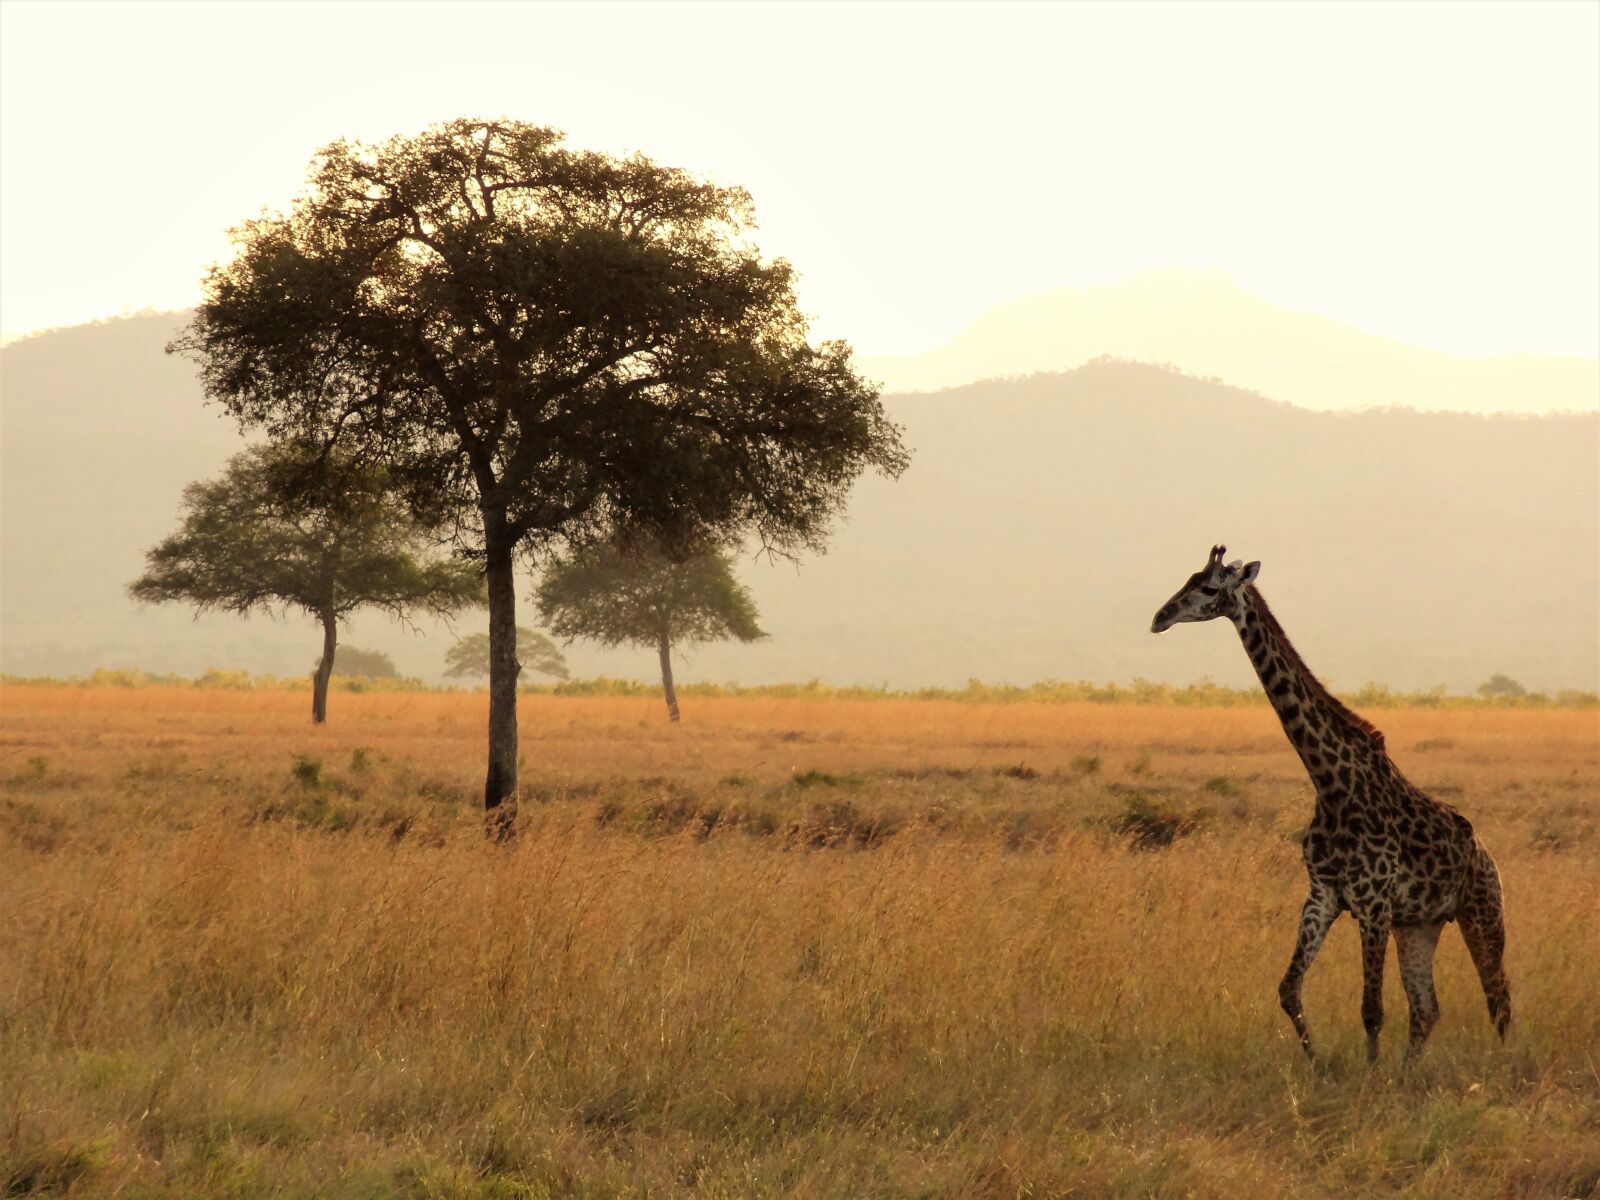 Sony Cyber-shot DSC-HX9V sample photo. Africa, giraffe, safari photography